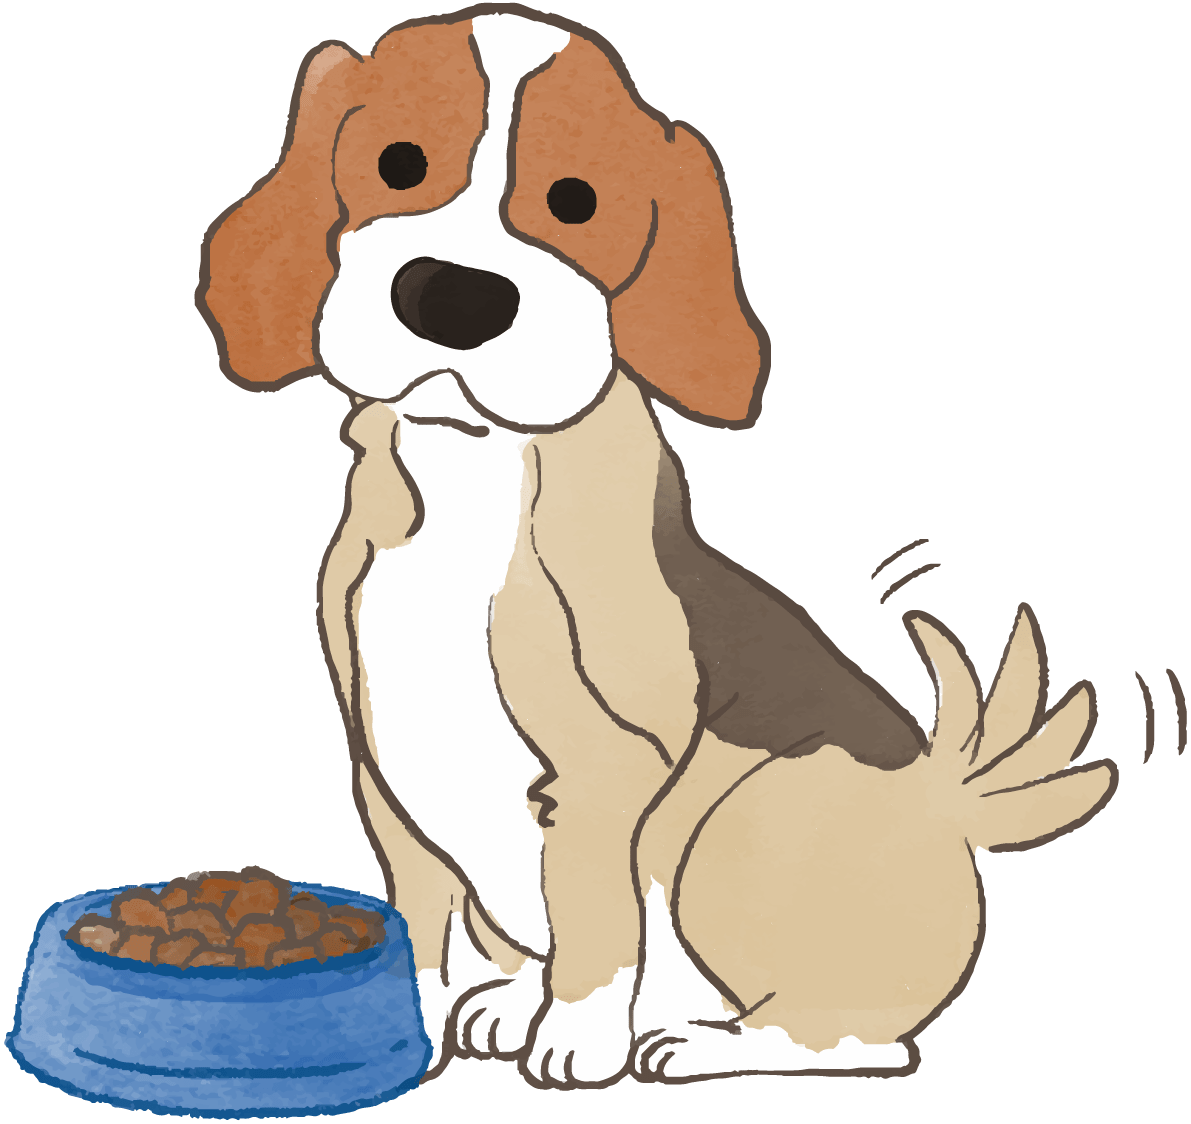 ビーグル ご飯を食べ尻尾を振る かわいい犬 イラスト素材 超多くの無料かわいいイラスト素材